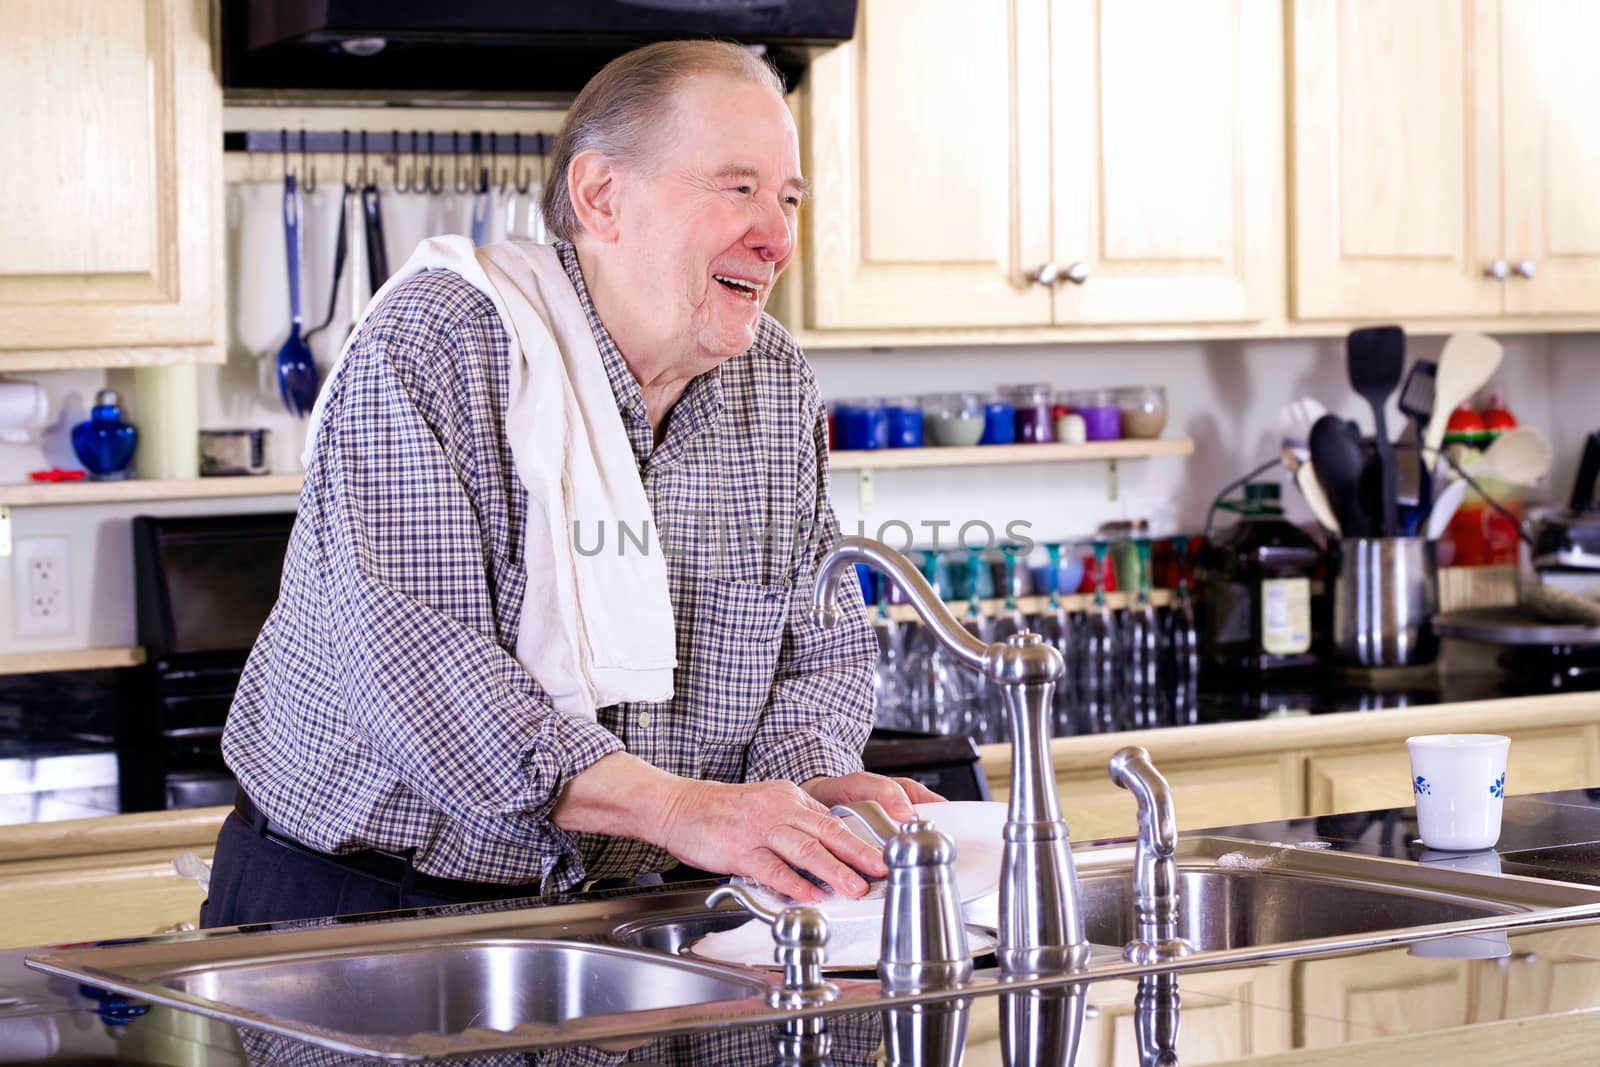 Elderly man washing dishes by jarenwicklund